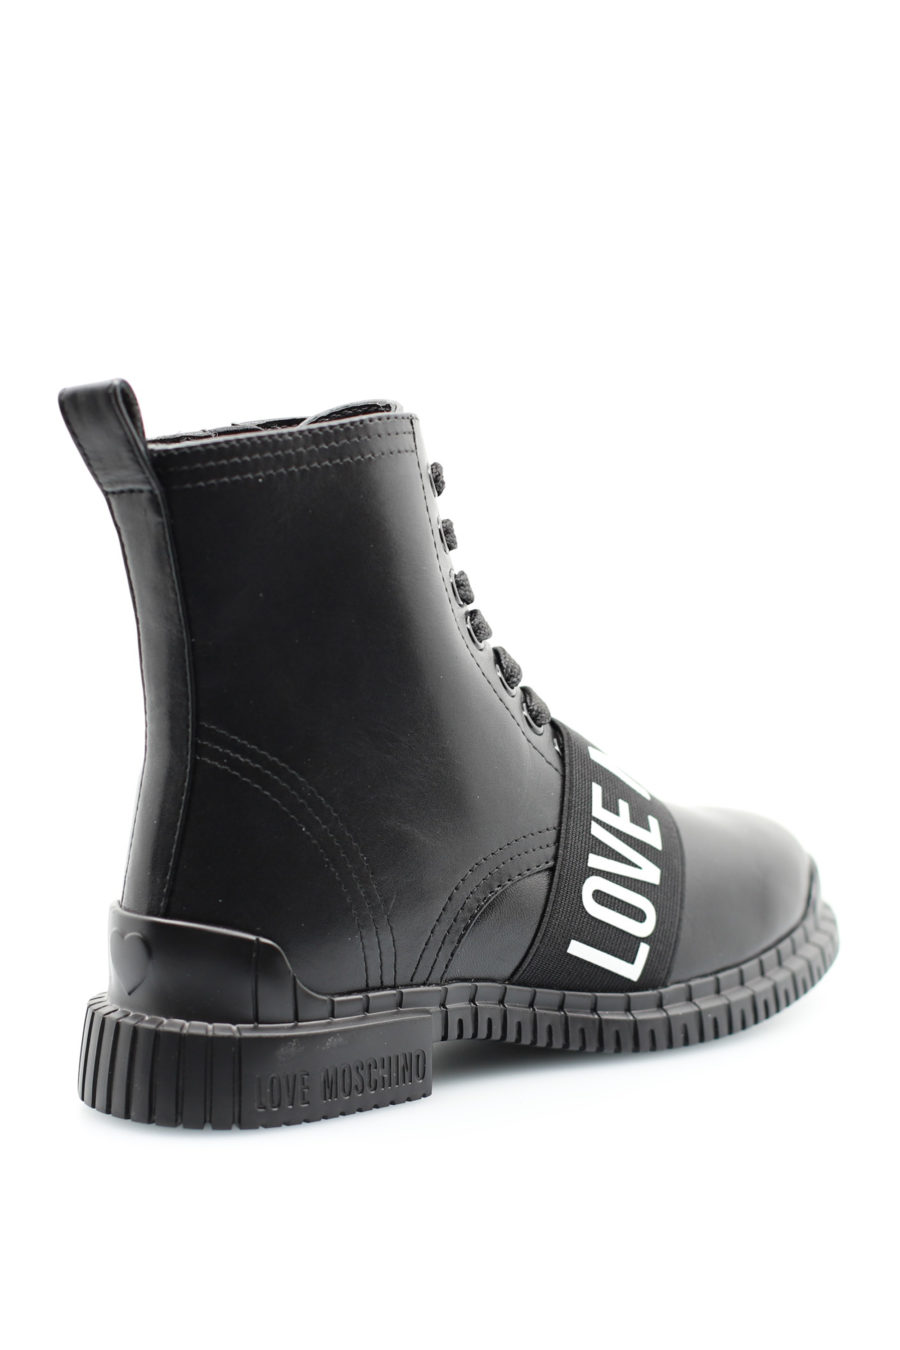 Black ankle boots with large logo - 44230c7c17ba1ca31b6353078679de2674856dd2